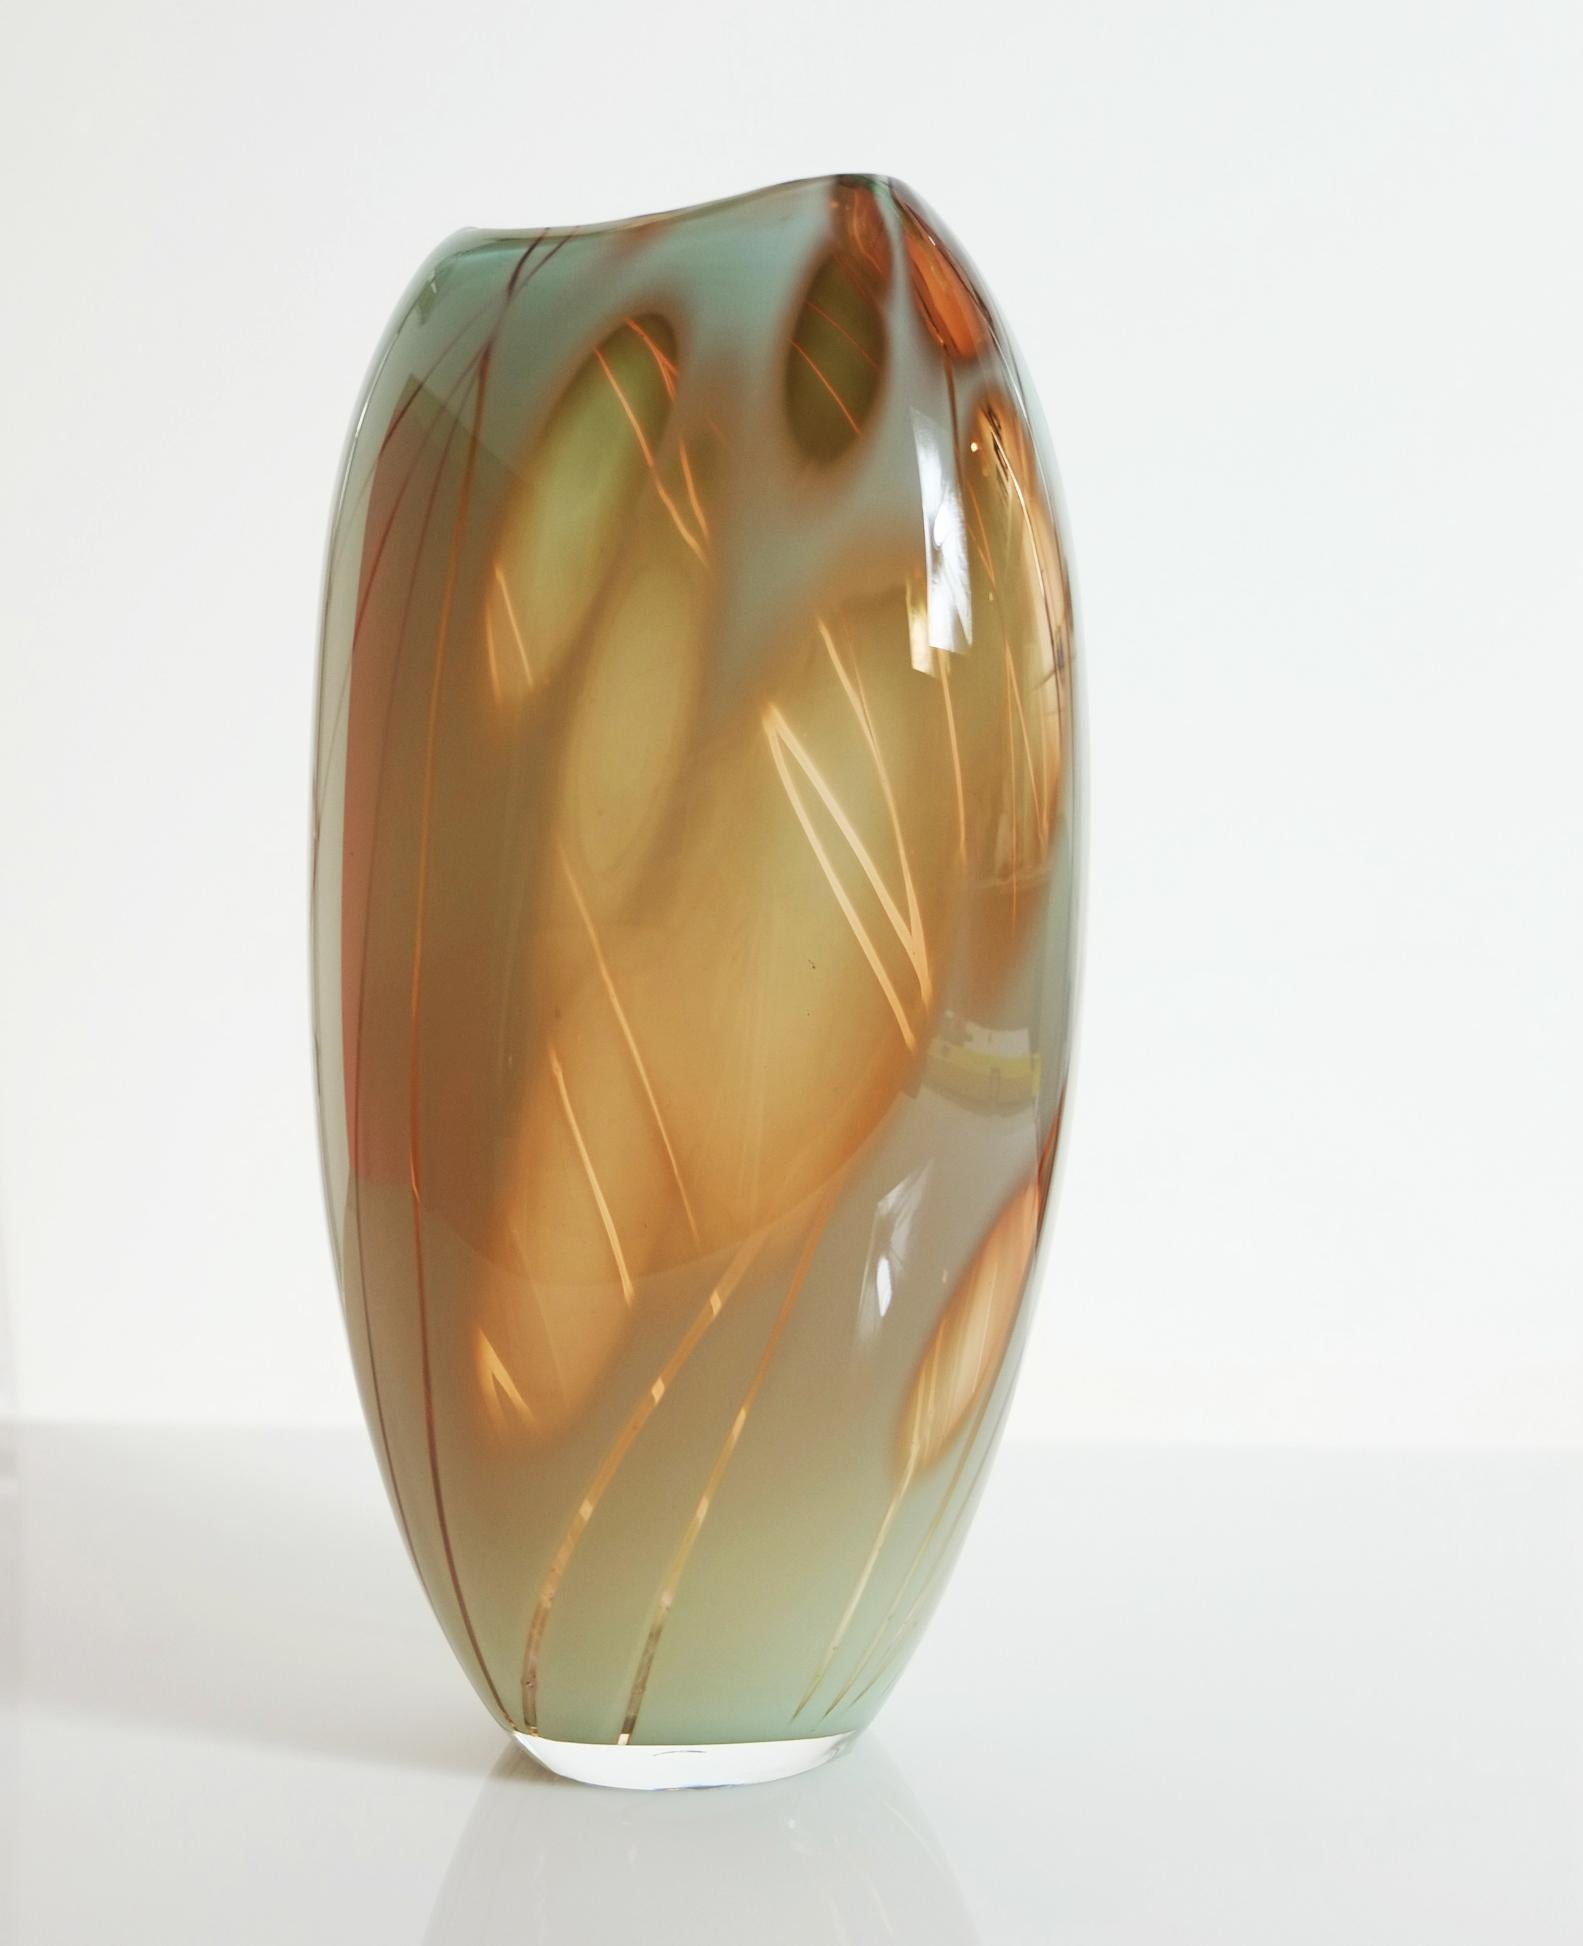 Das Glasgefäß Dianthus wurde von der Pflanze inspiriert und besteht aus Celaden- und Aprikosenglas.
Es wurde mit der klassischen schwedischen Graal-Technik hergestellt, bei der das Muster auf einer Drehbank mit Hilfe von Diamantgravurscheiben von